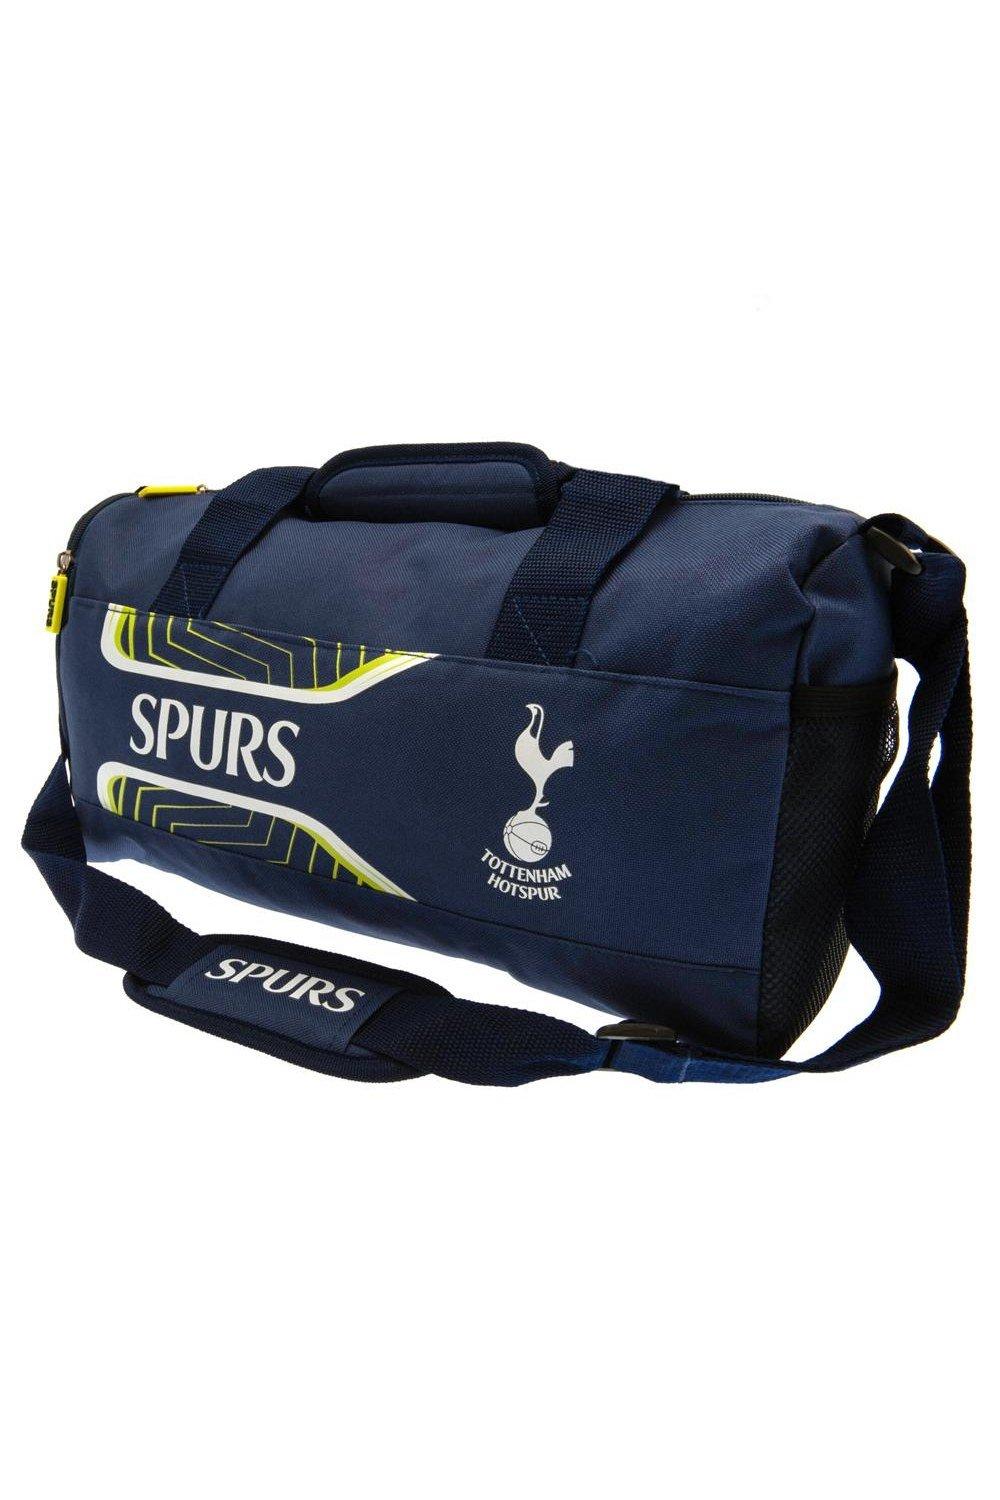 Спортивная сумка Flash Tottenham Hotspur FC, темно-синий 1 шт застежка молния гемостатическая застежка молния быстрая застежка молния уличная портативная